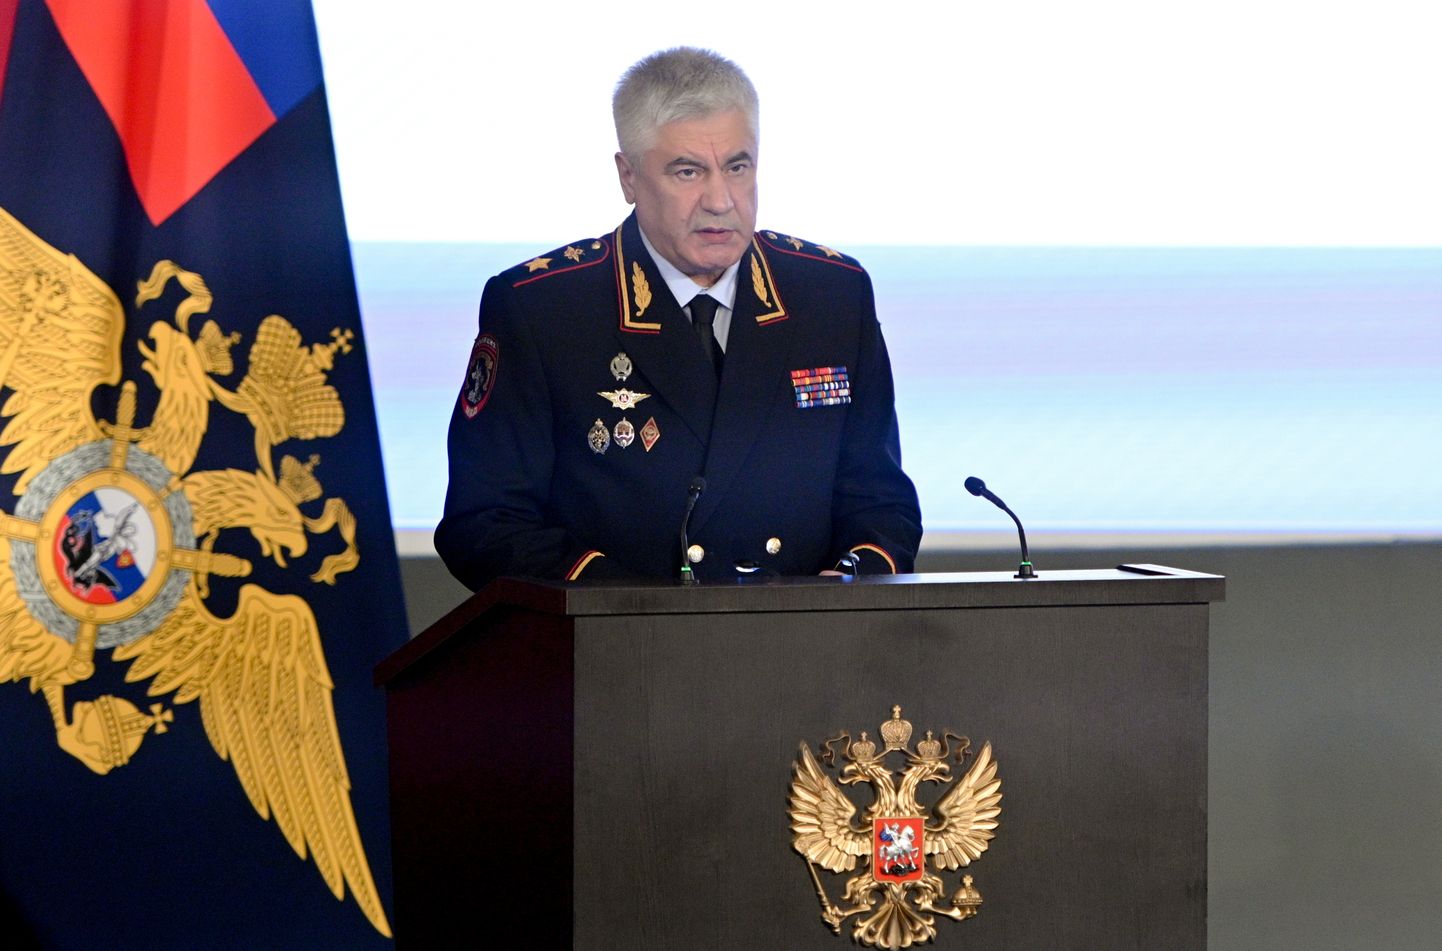 Vene siseminister Vladimir Kolokoltsev märtsis kõnet pidamas.